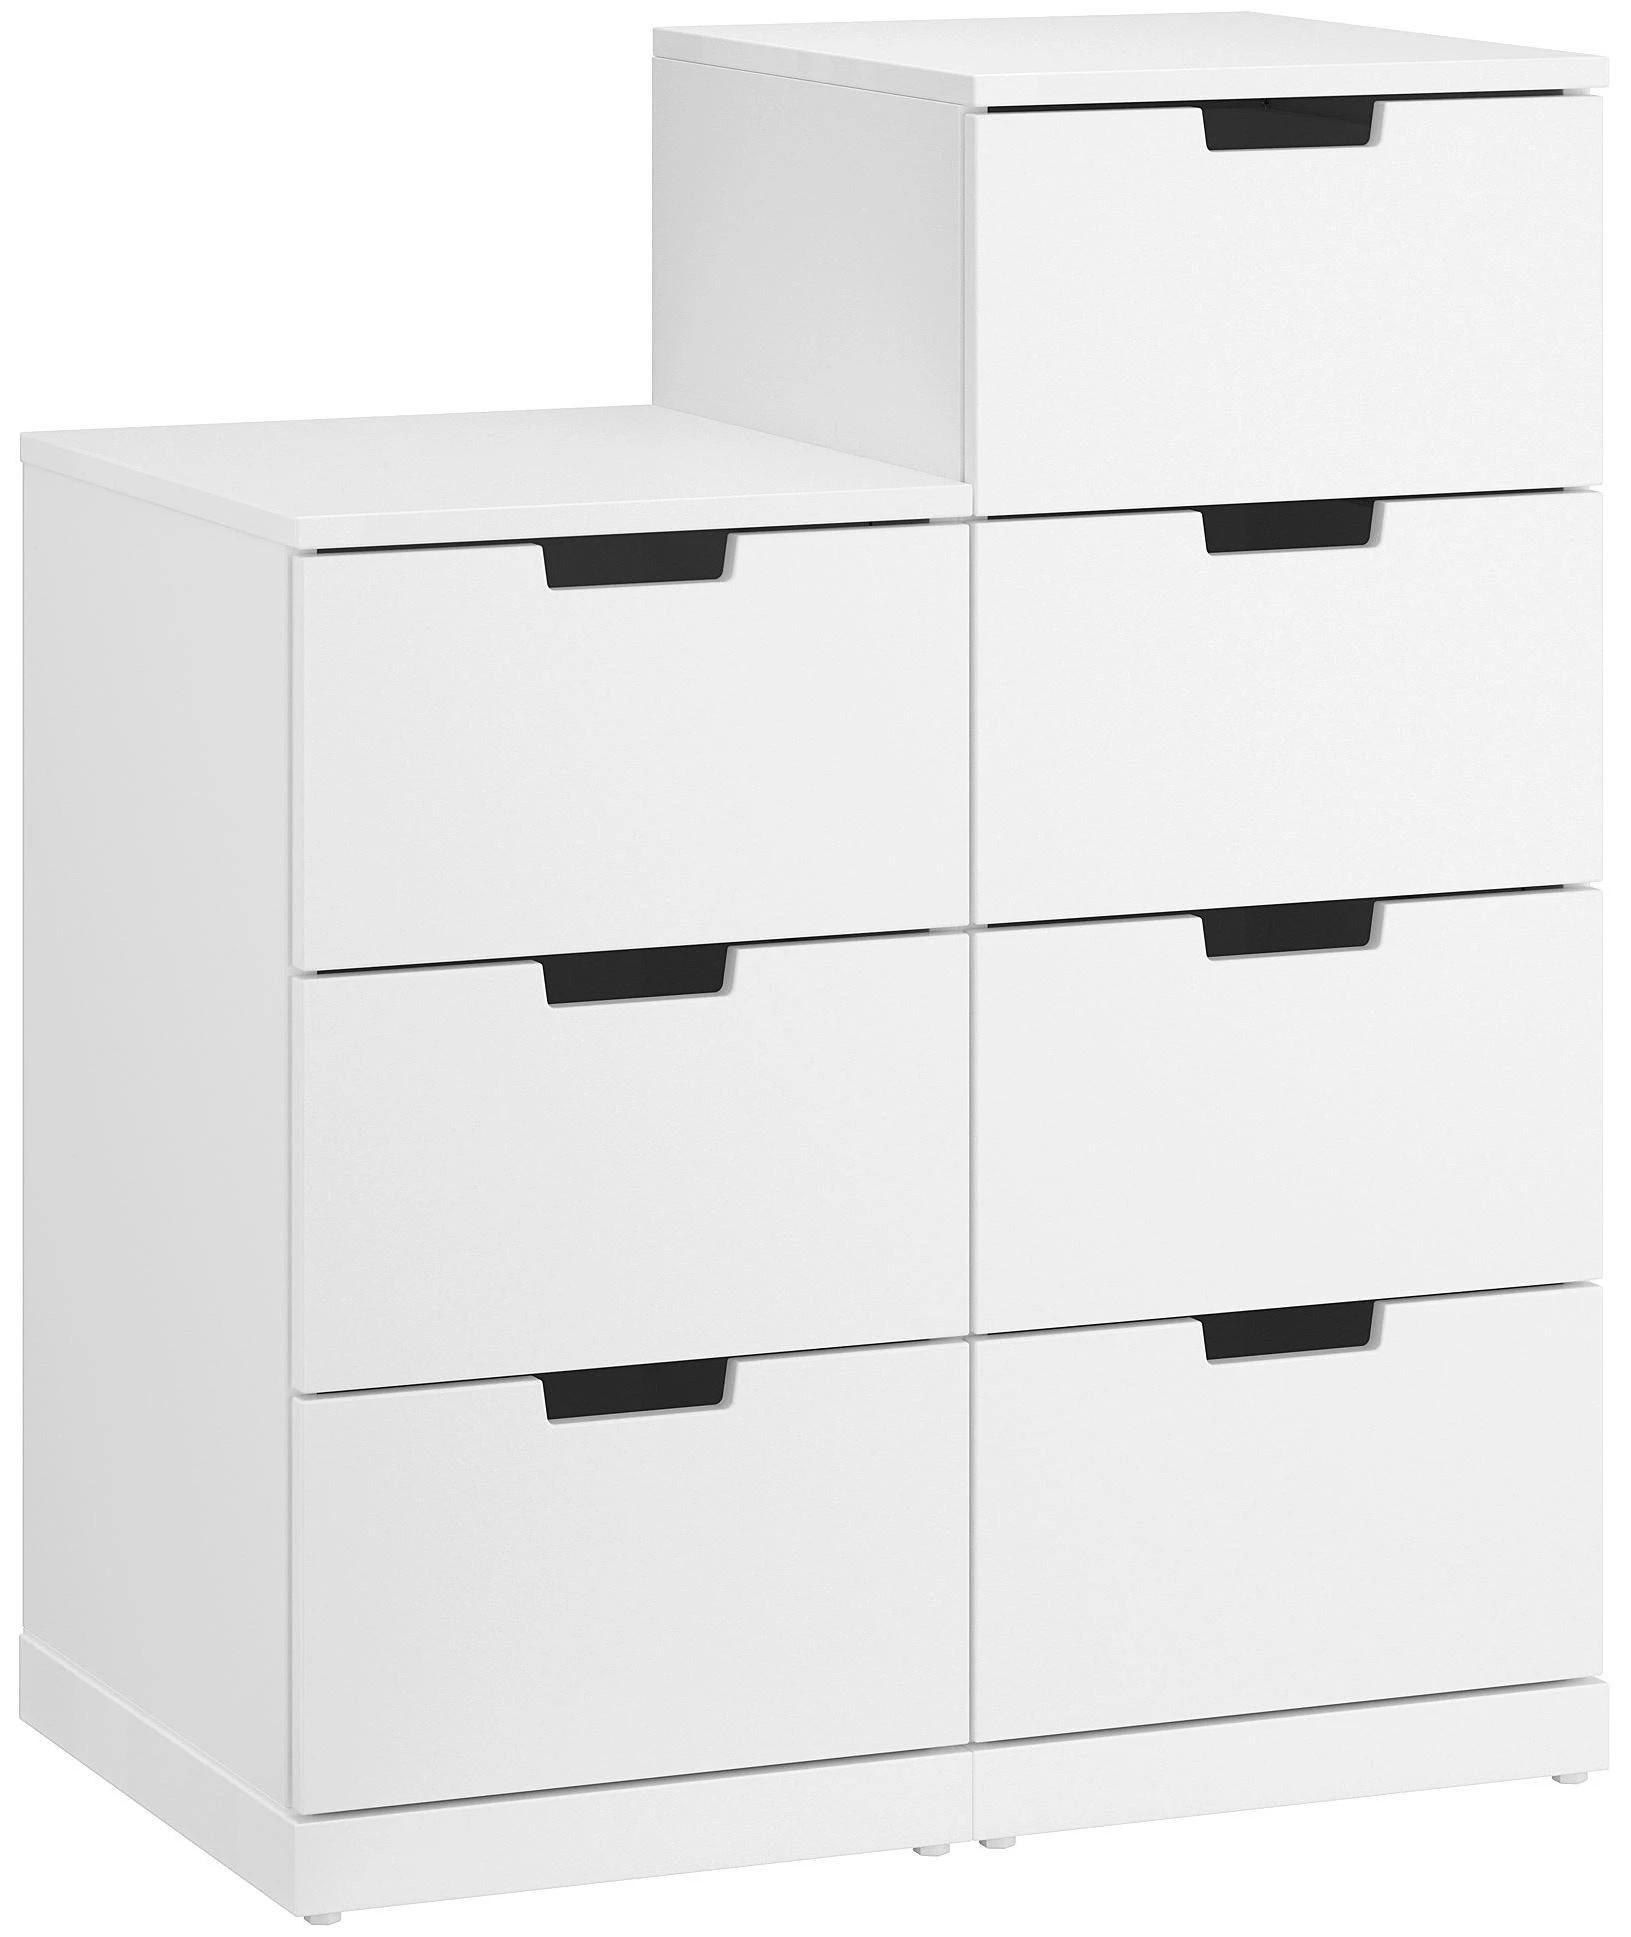 Комод с 7 ящиками - аналог IKEA  NORDLI, 60x90 см, белый